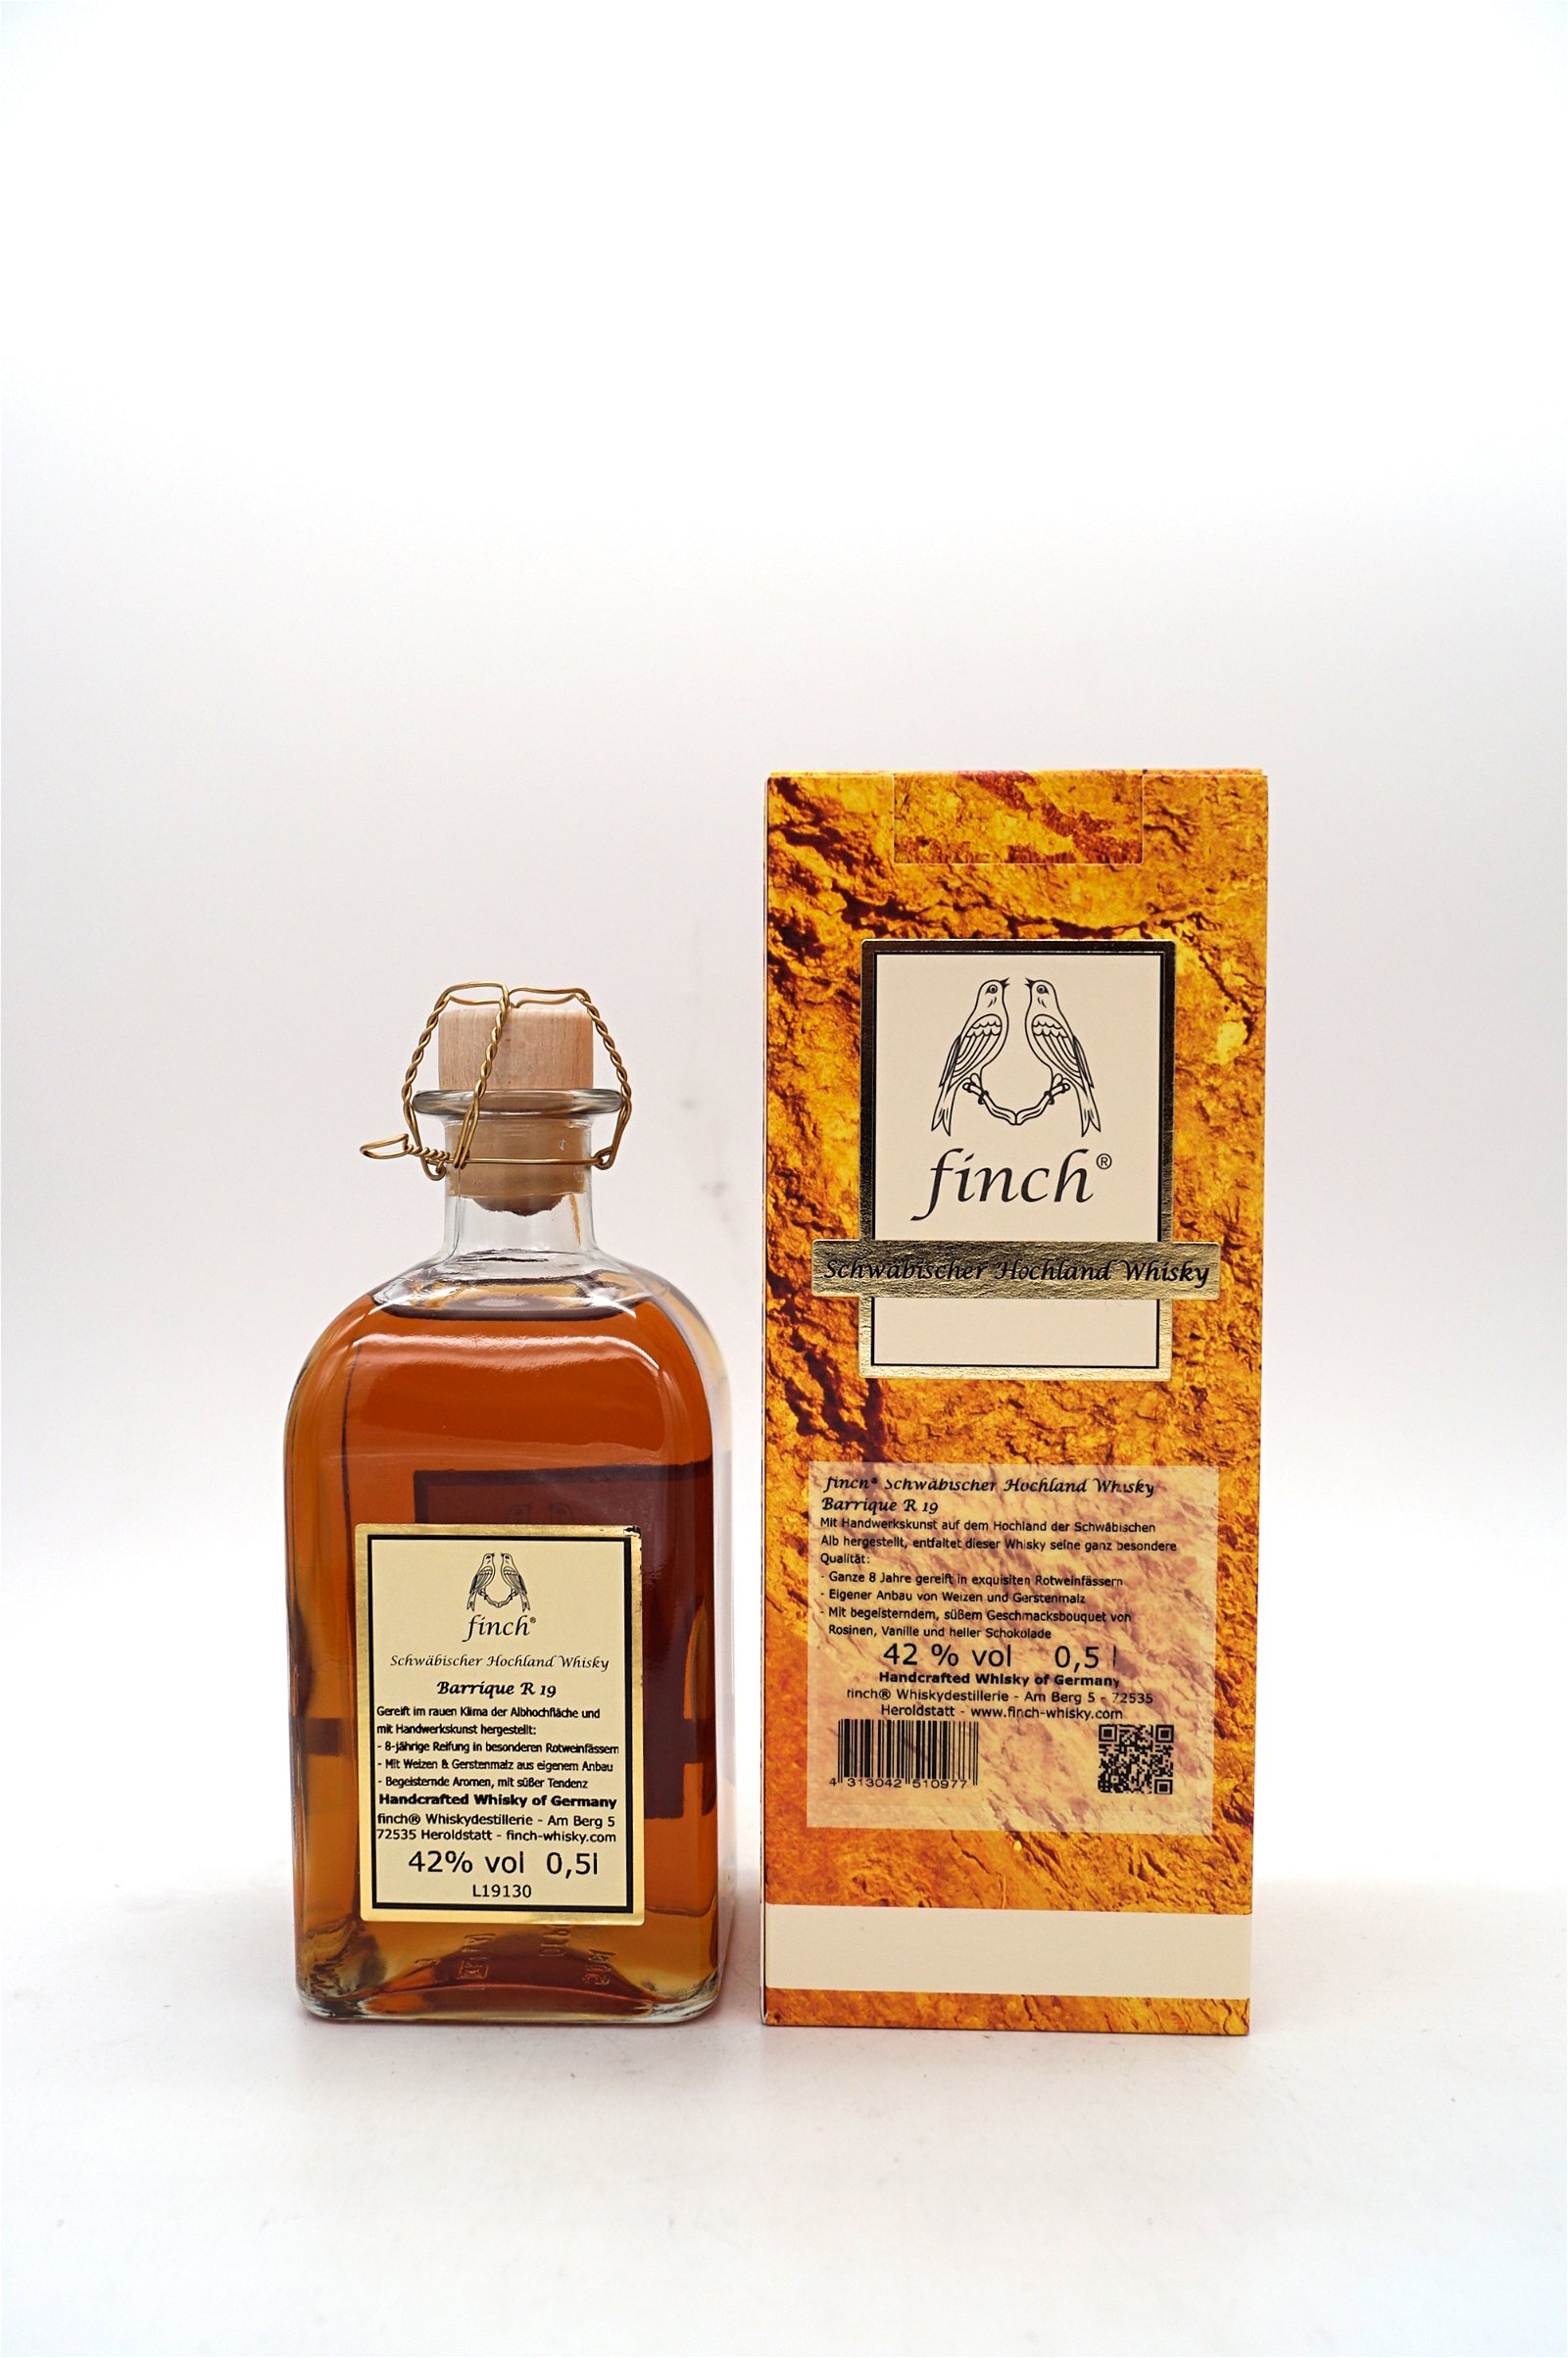 Finch Barrique R 19 Limitierte Abfüllung Schwäbischer Hochland Whisky